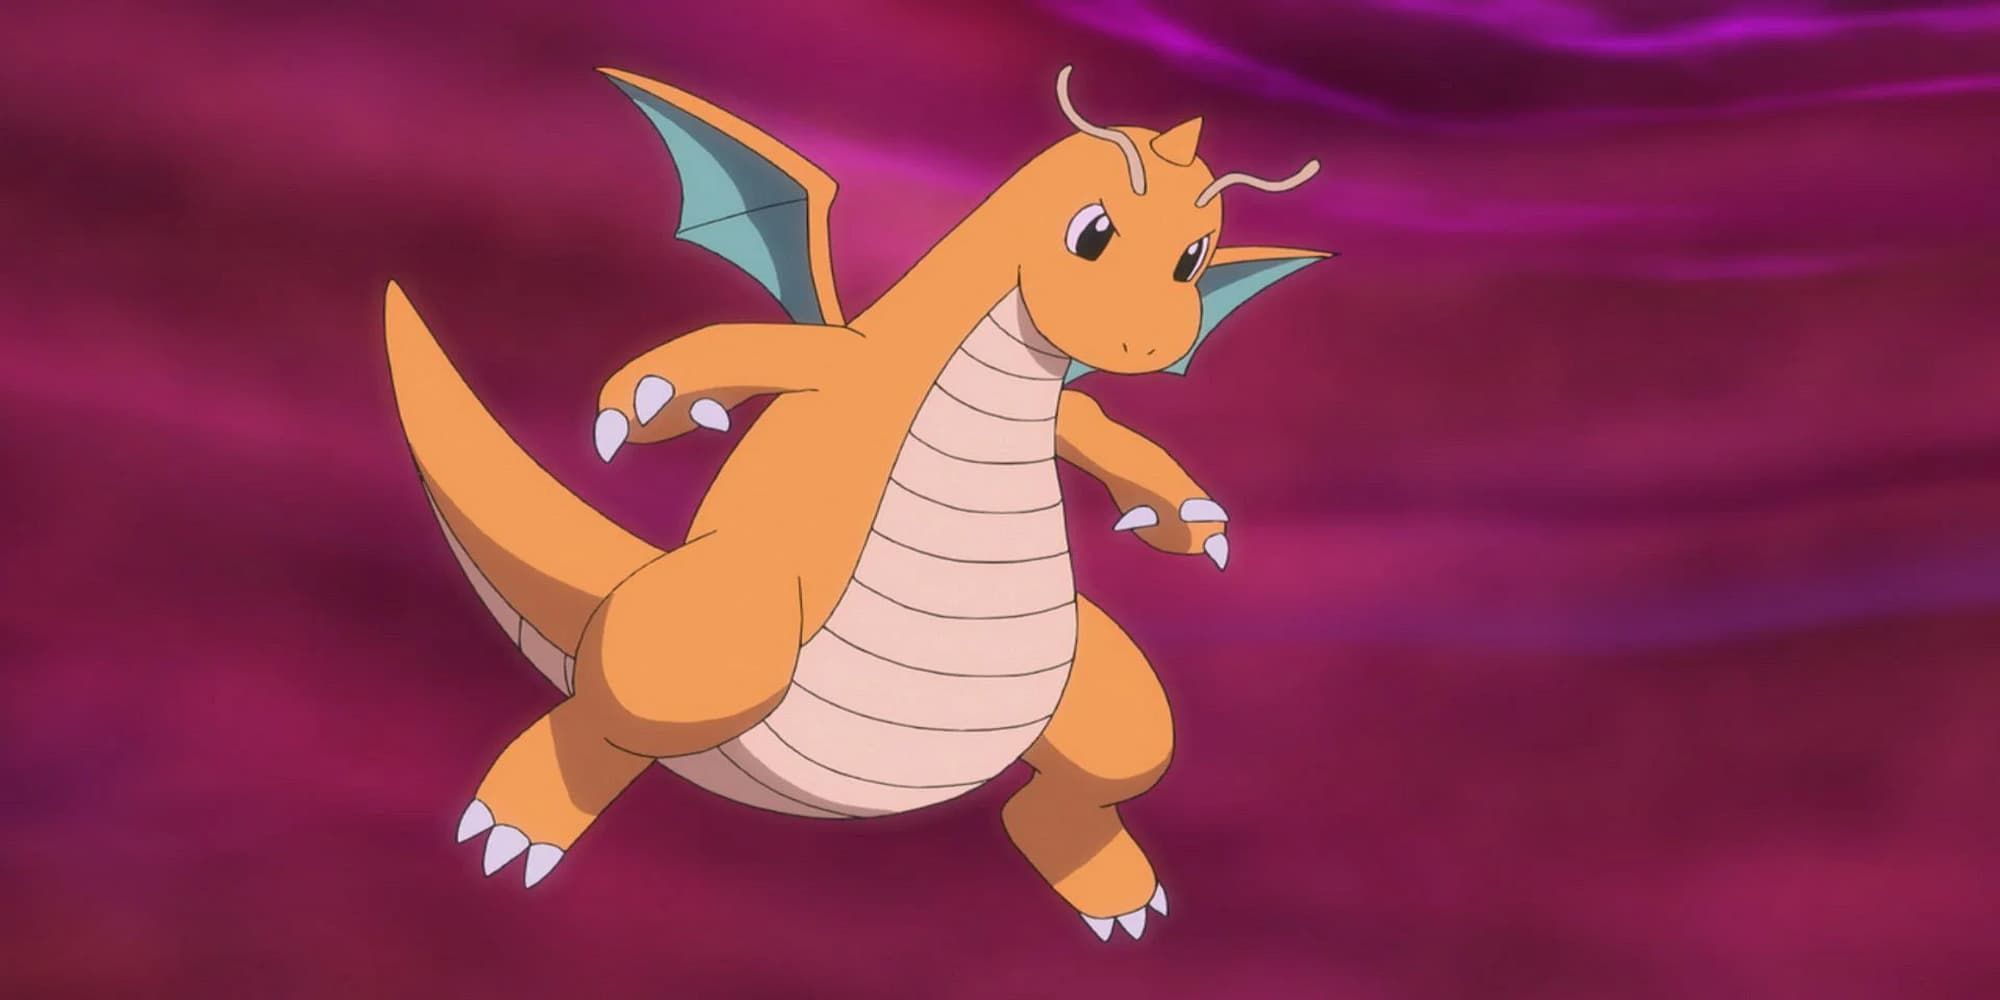 Pokemon Dragonite in the anime